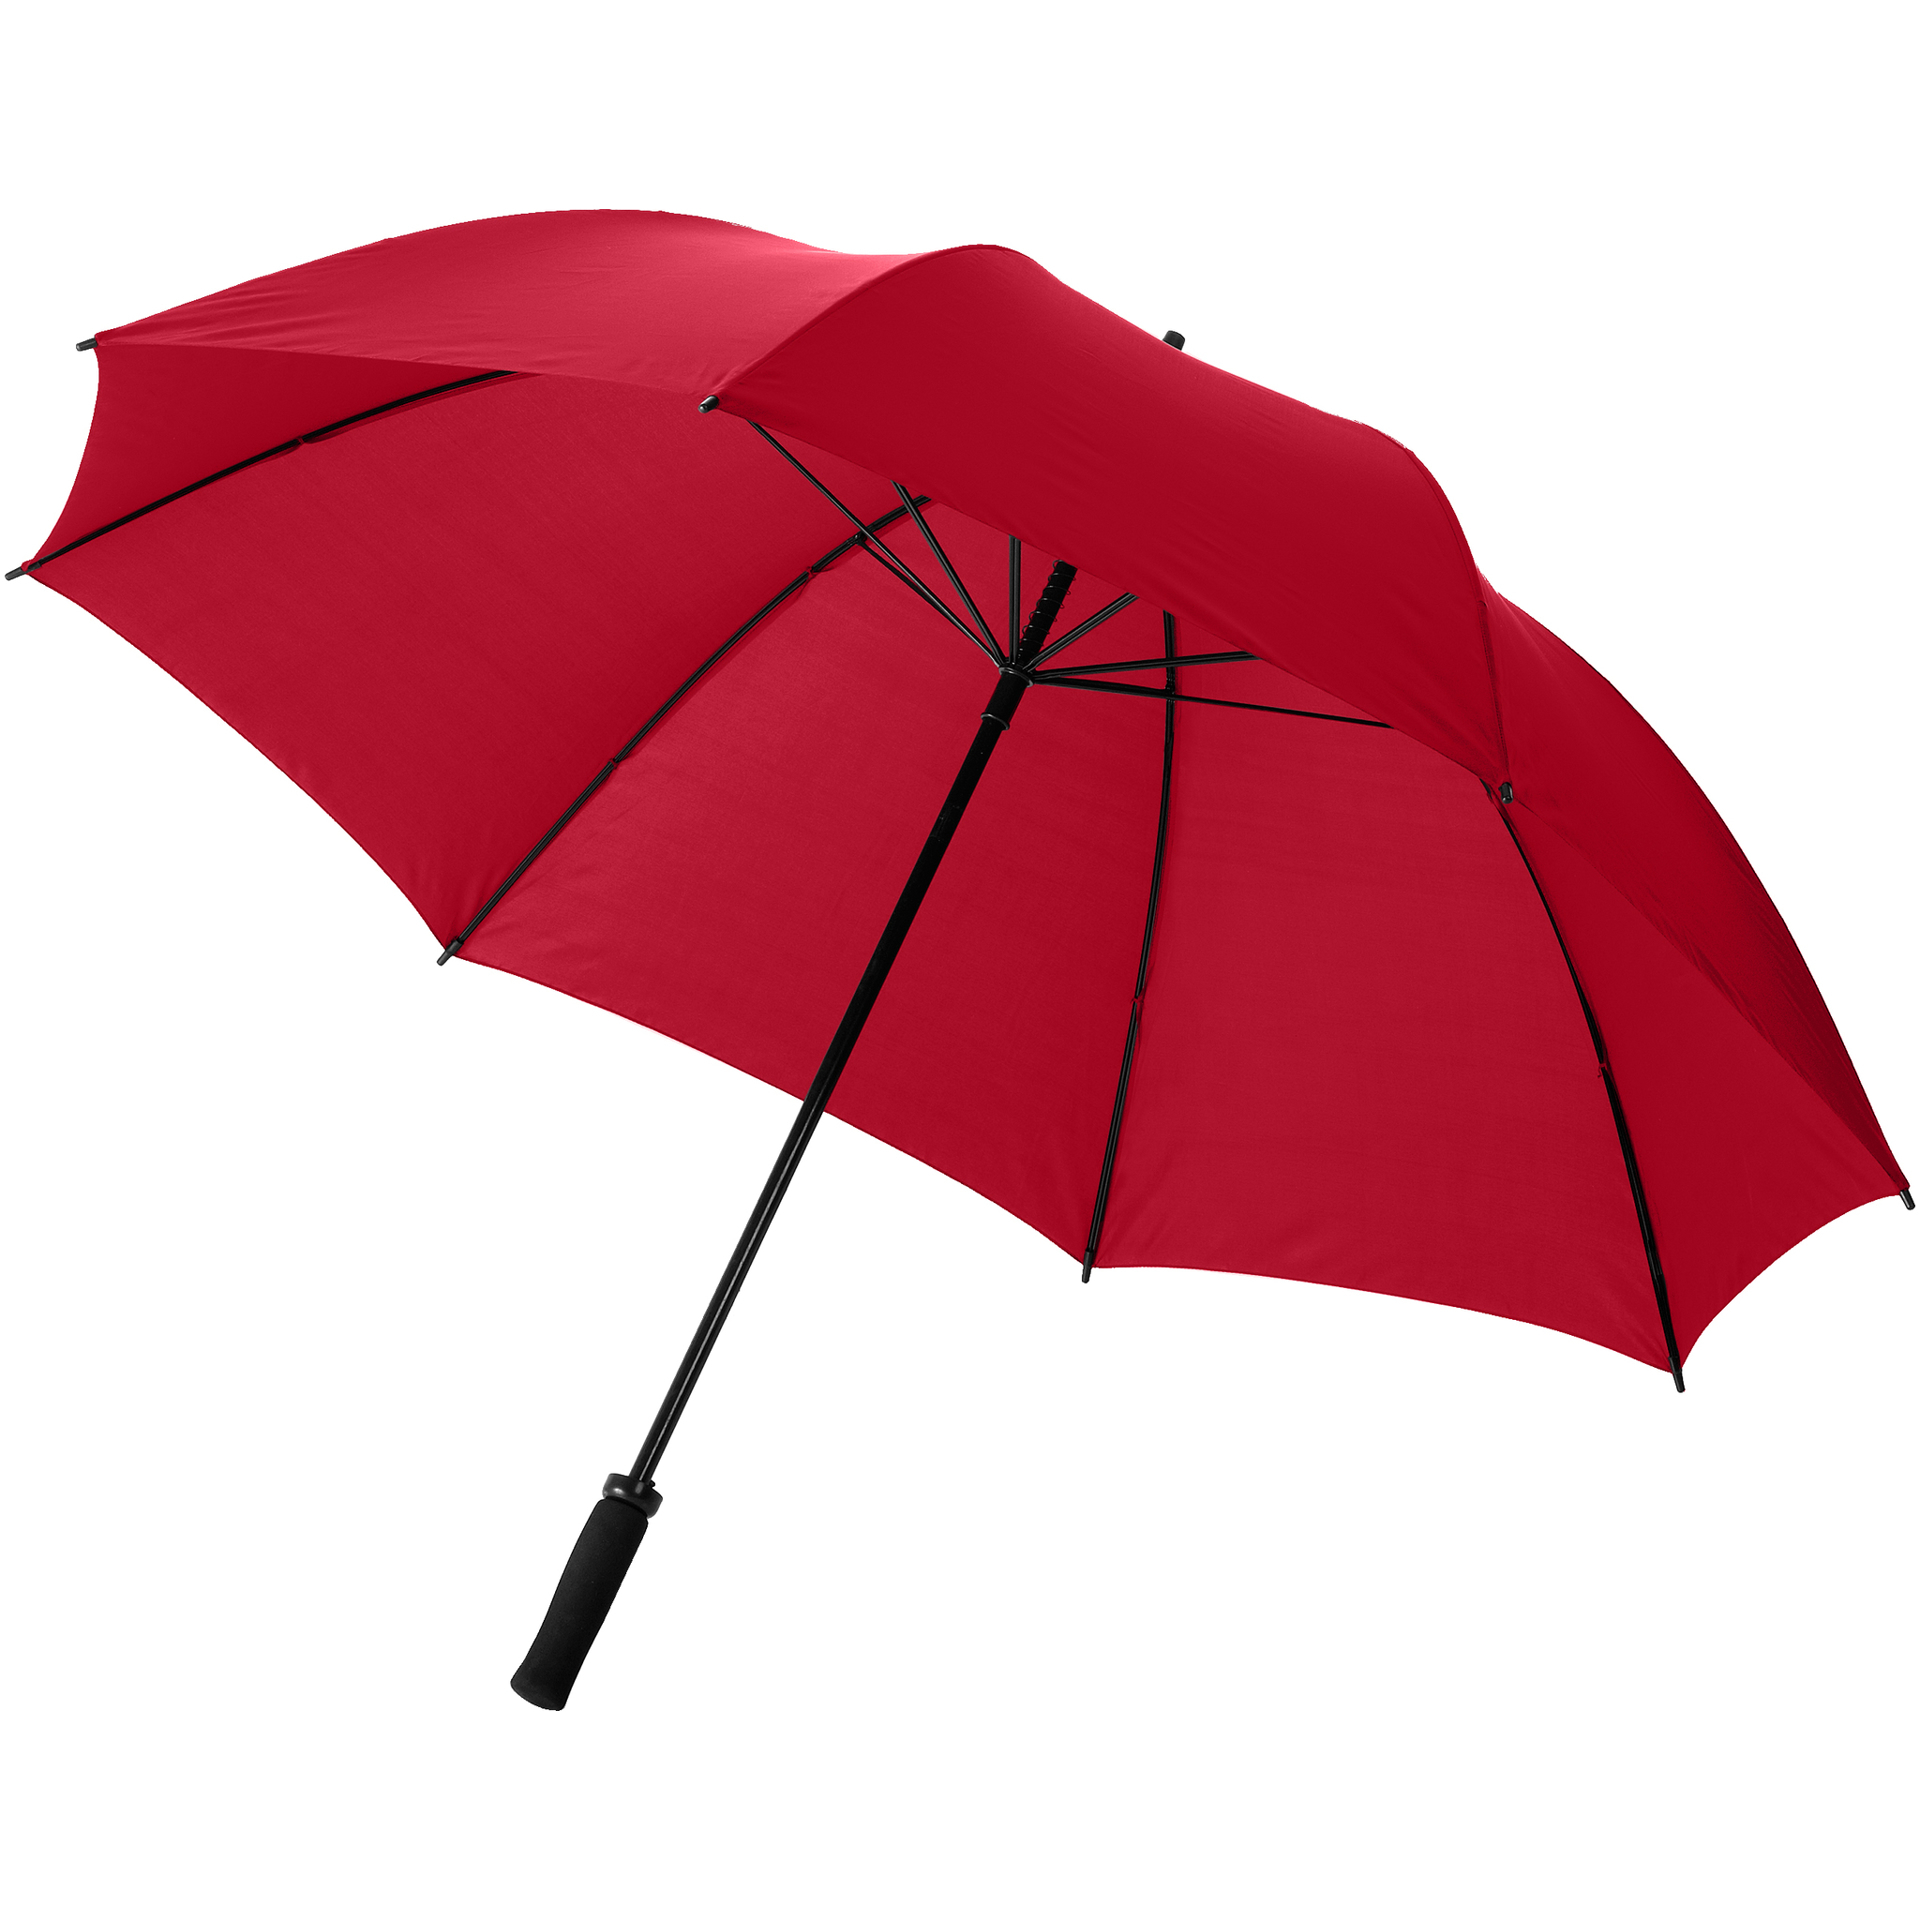 Storm Umbrella in red